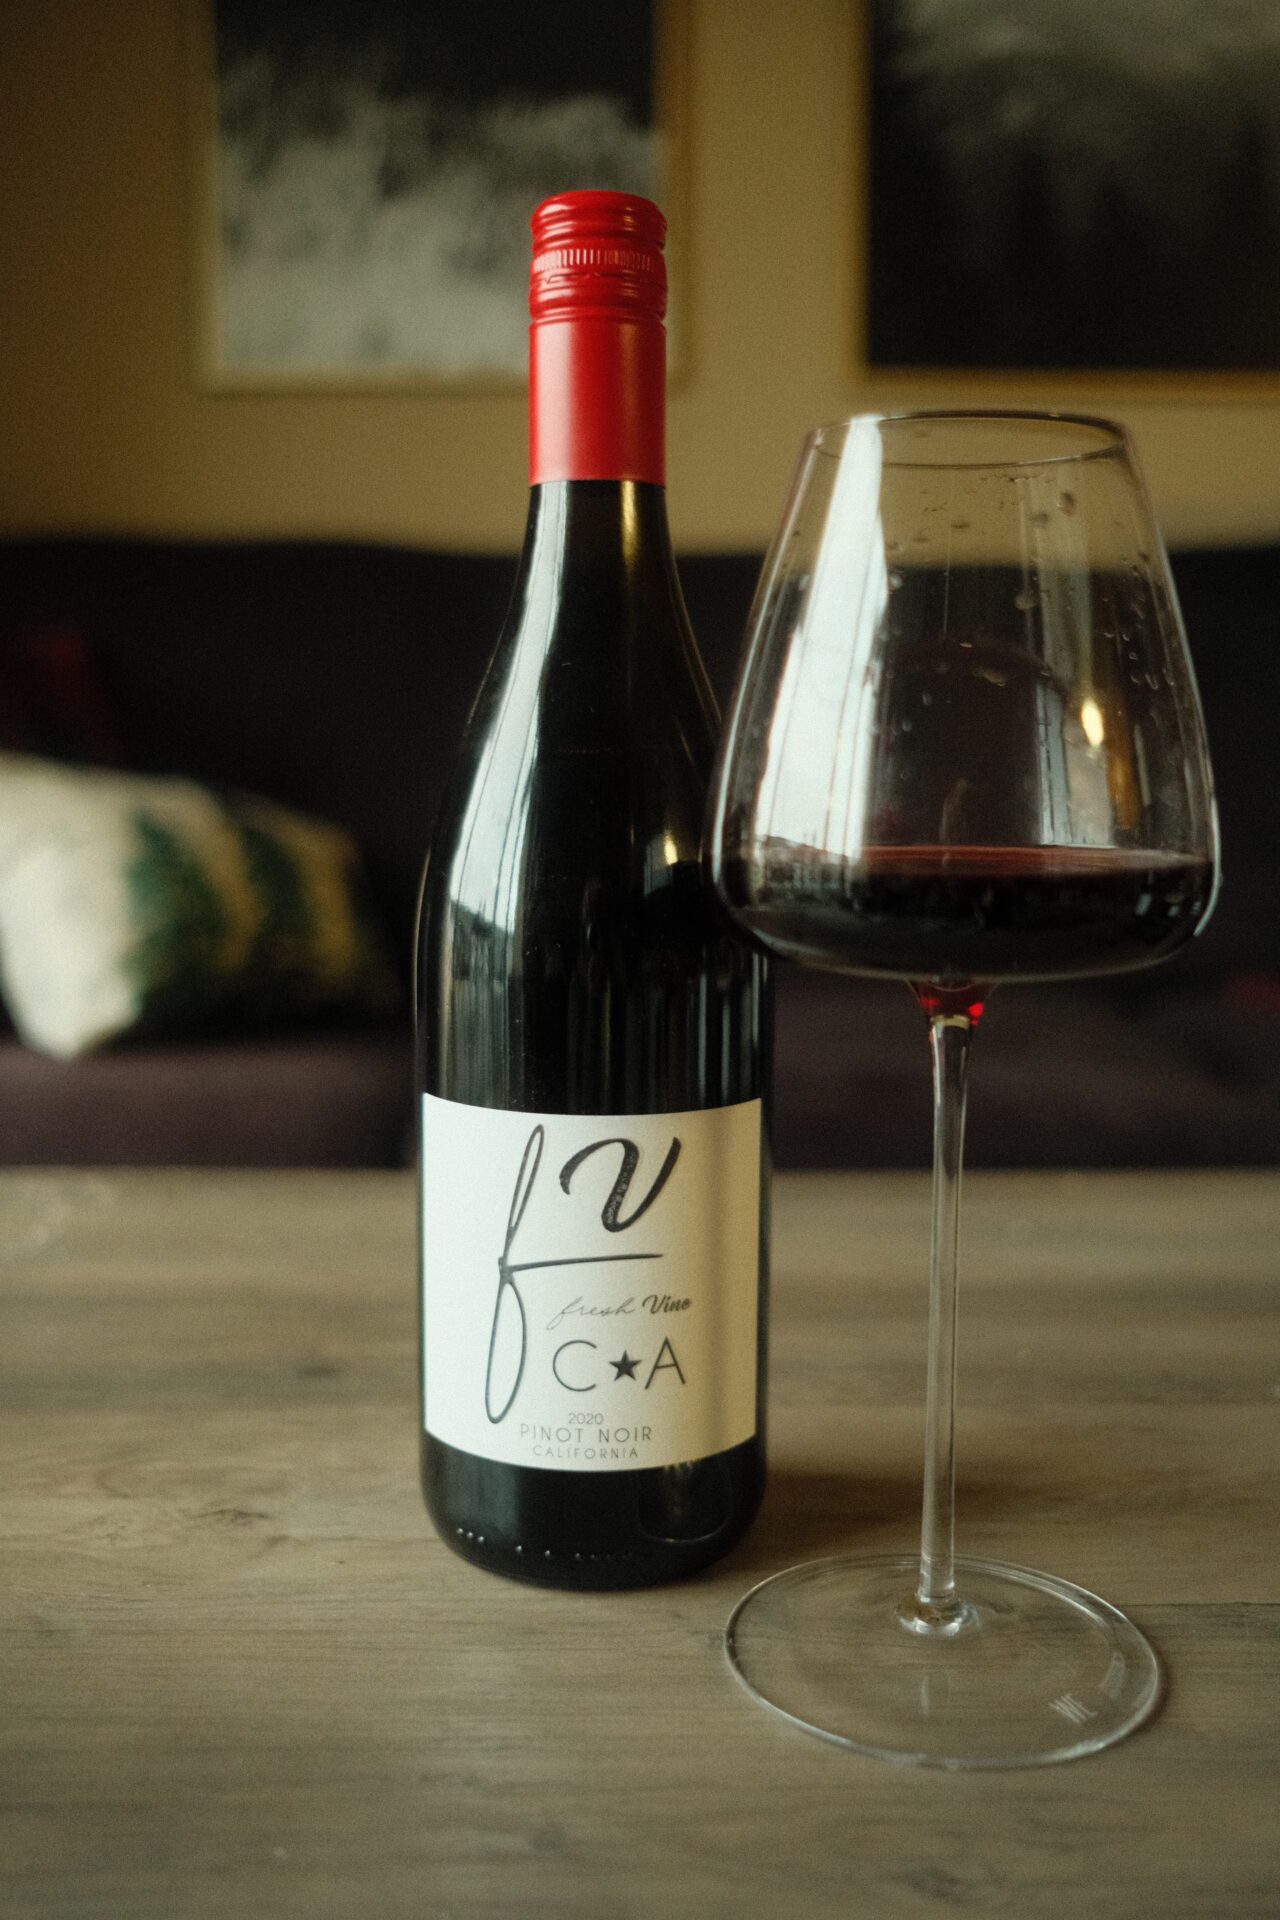 Fresh Vine Wine Pinot Noir bottle